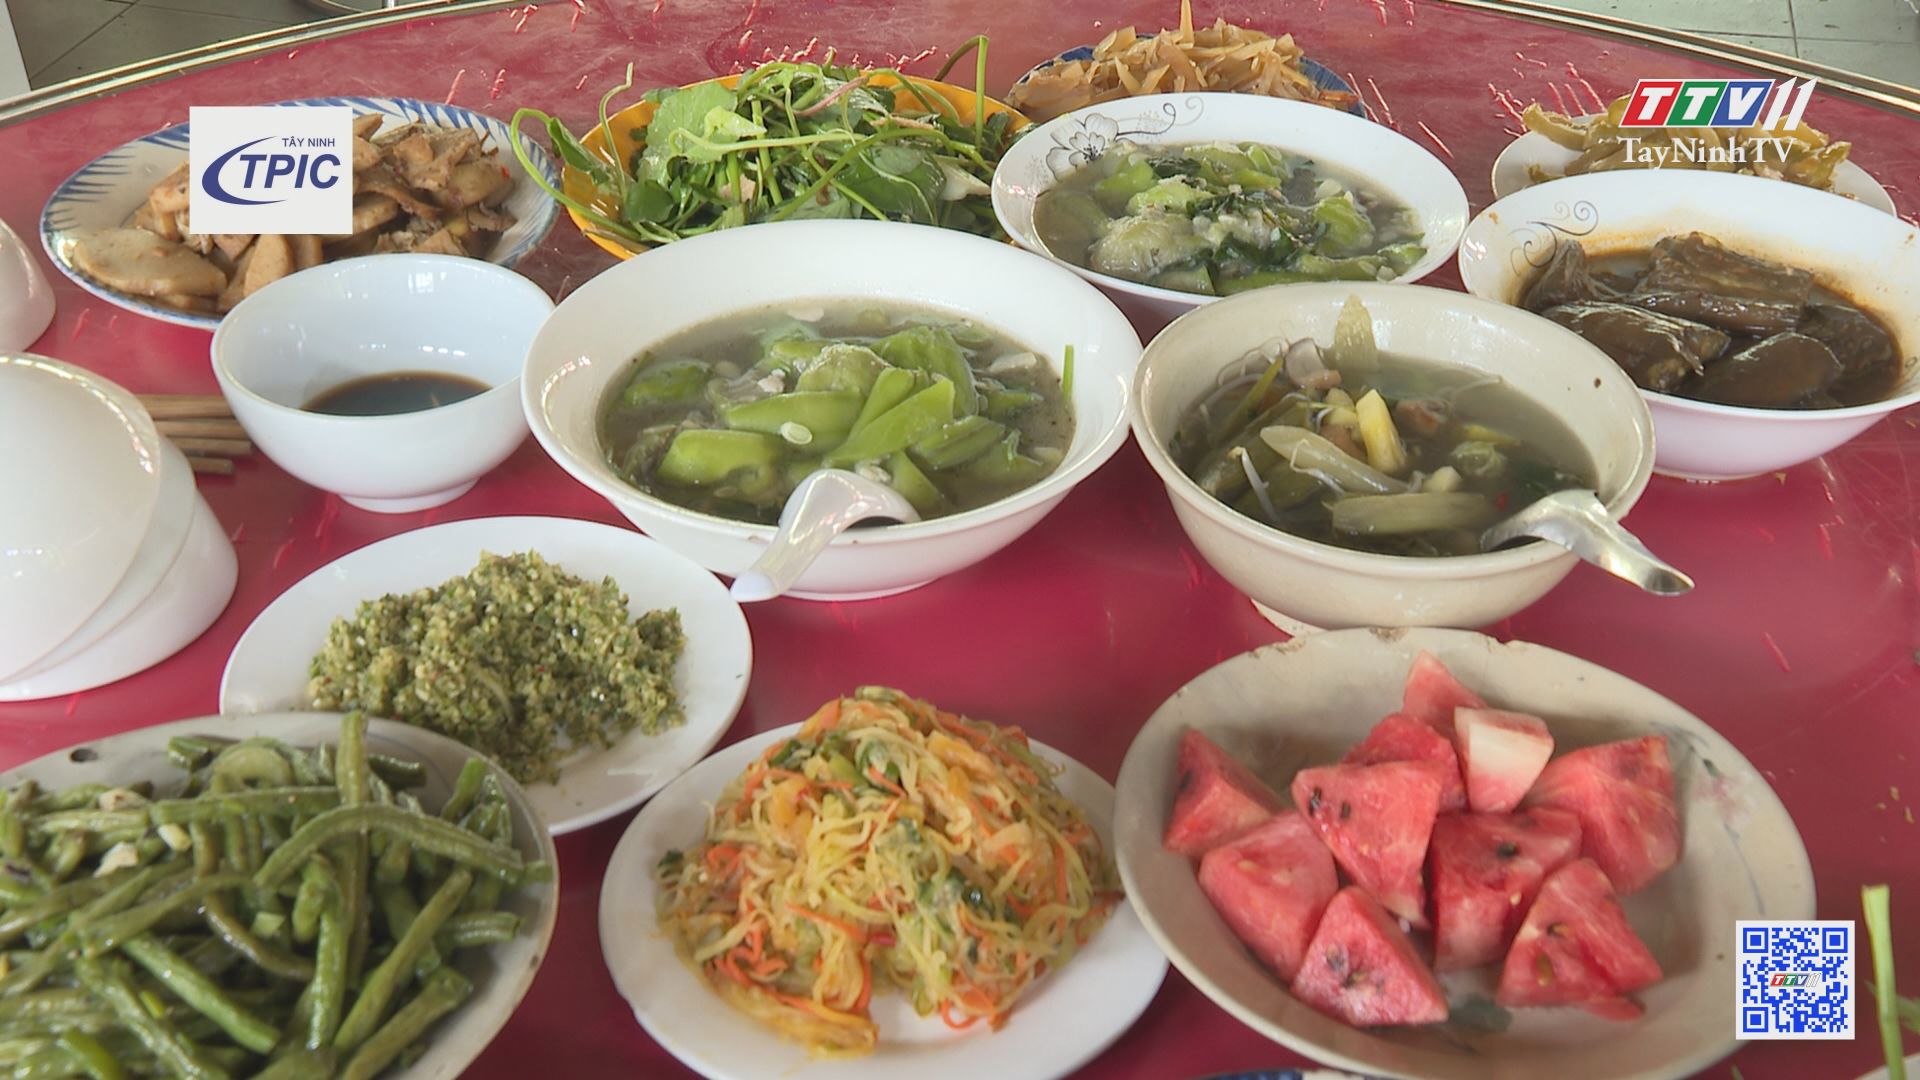 Độc đáo ẩm thực chay Tây Ninh | Hành trình OCOP | TayNinhTV